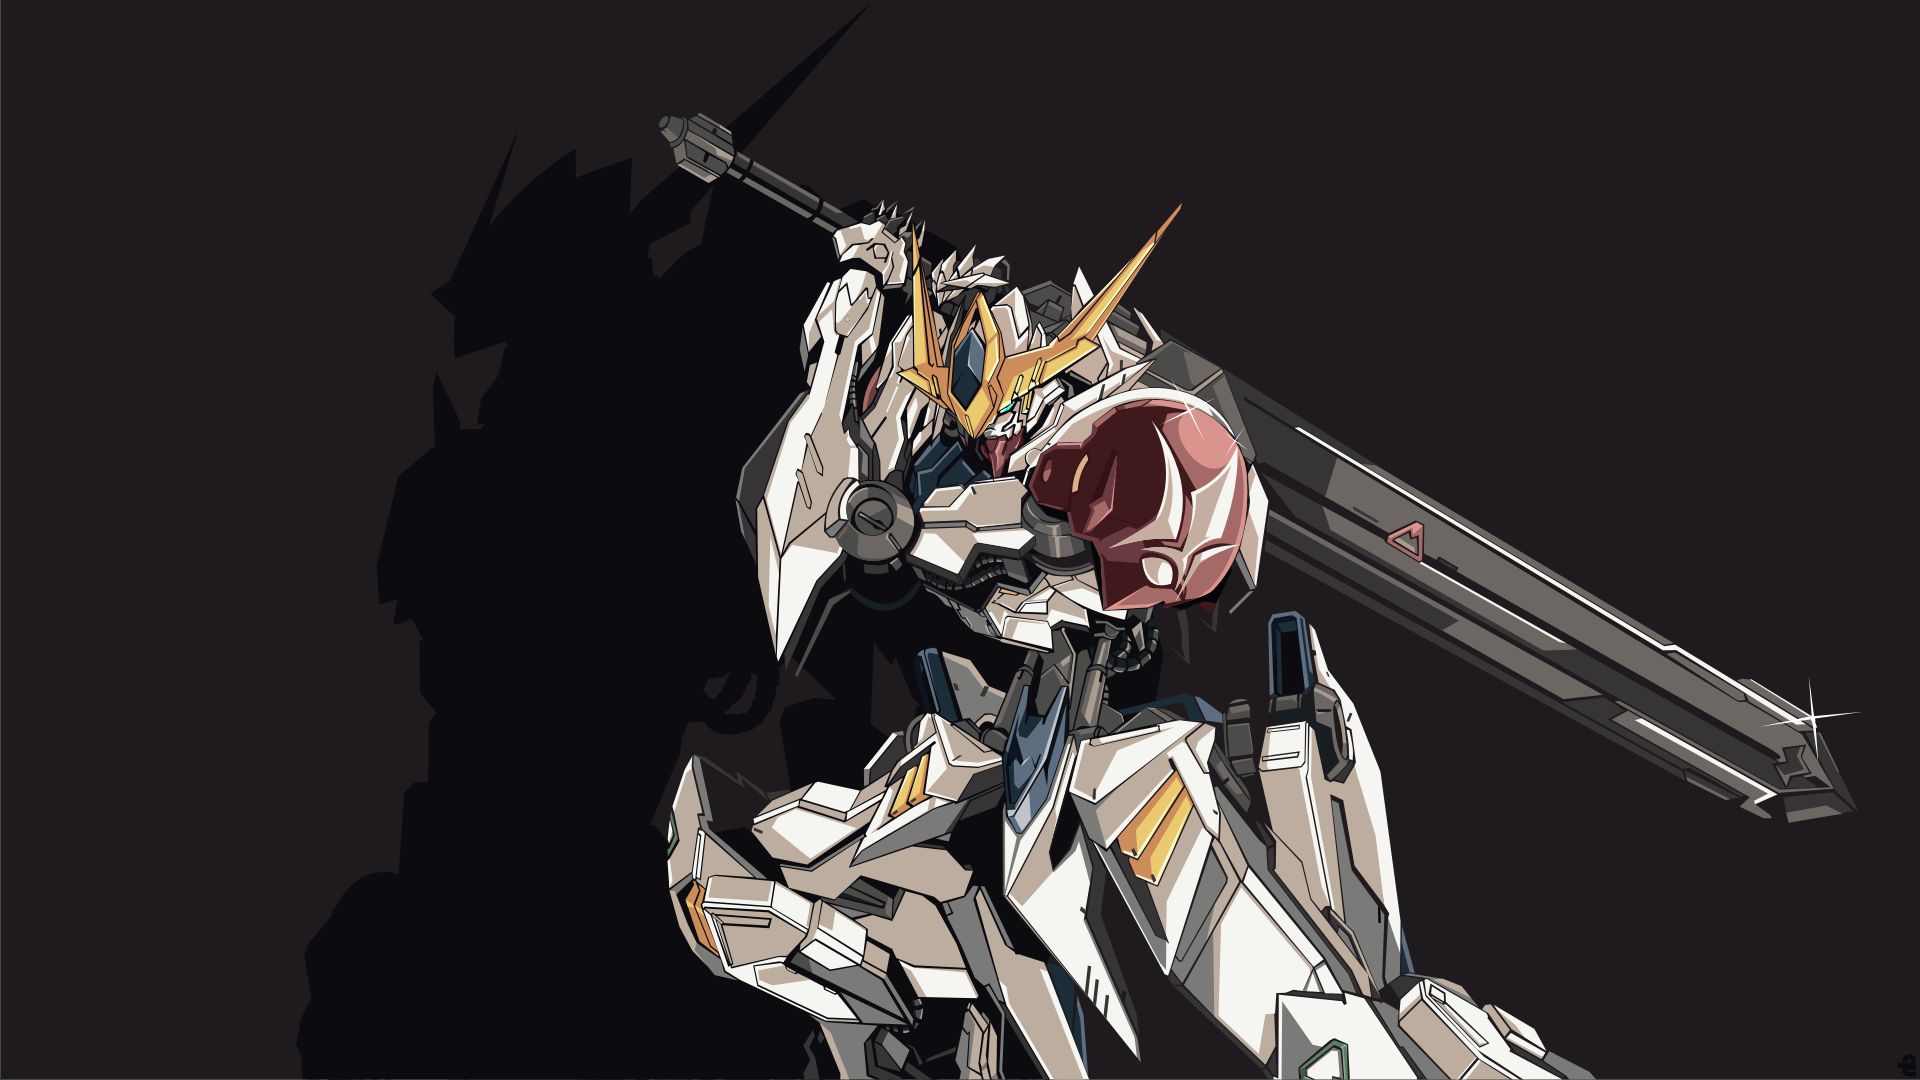 Melhores papéis de parede de Mobile Suit Gundam para tela do telefone